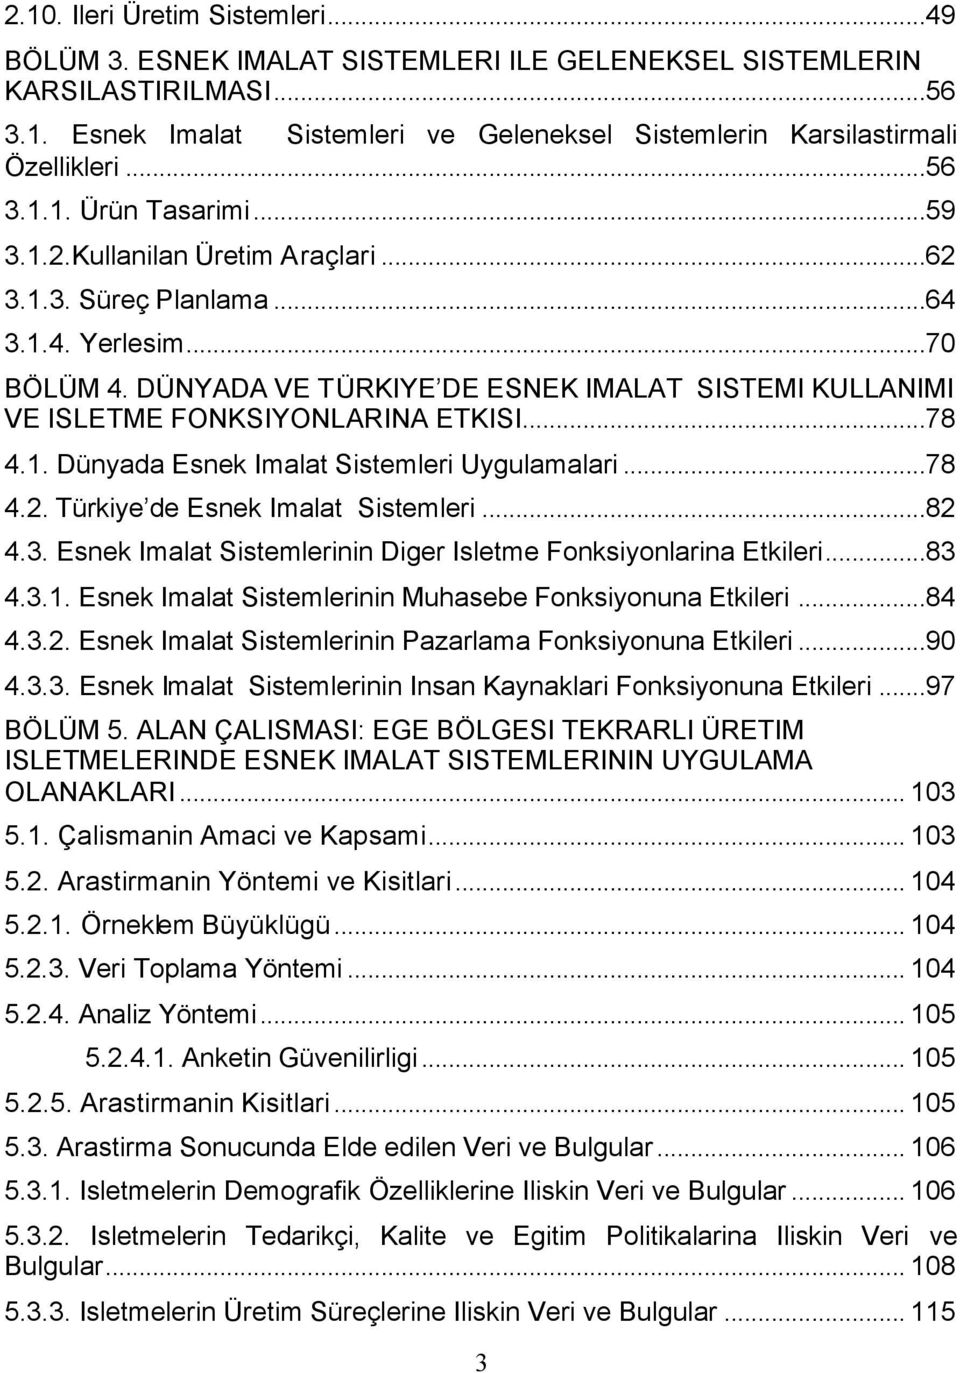 DÜNYADA VE TÜRKIYE DE ESNEK IMALAT SISTEMI KULLANIMI VE ISLETME FONKSIYONLARINA ETKISI...78 4.1. Dünyada Esnek Imalat Sistemleri Uygulamalari...78 4.2. Türkiye de Esnek Imalat Sistemleri...82 4.3.